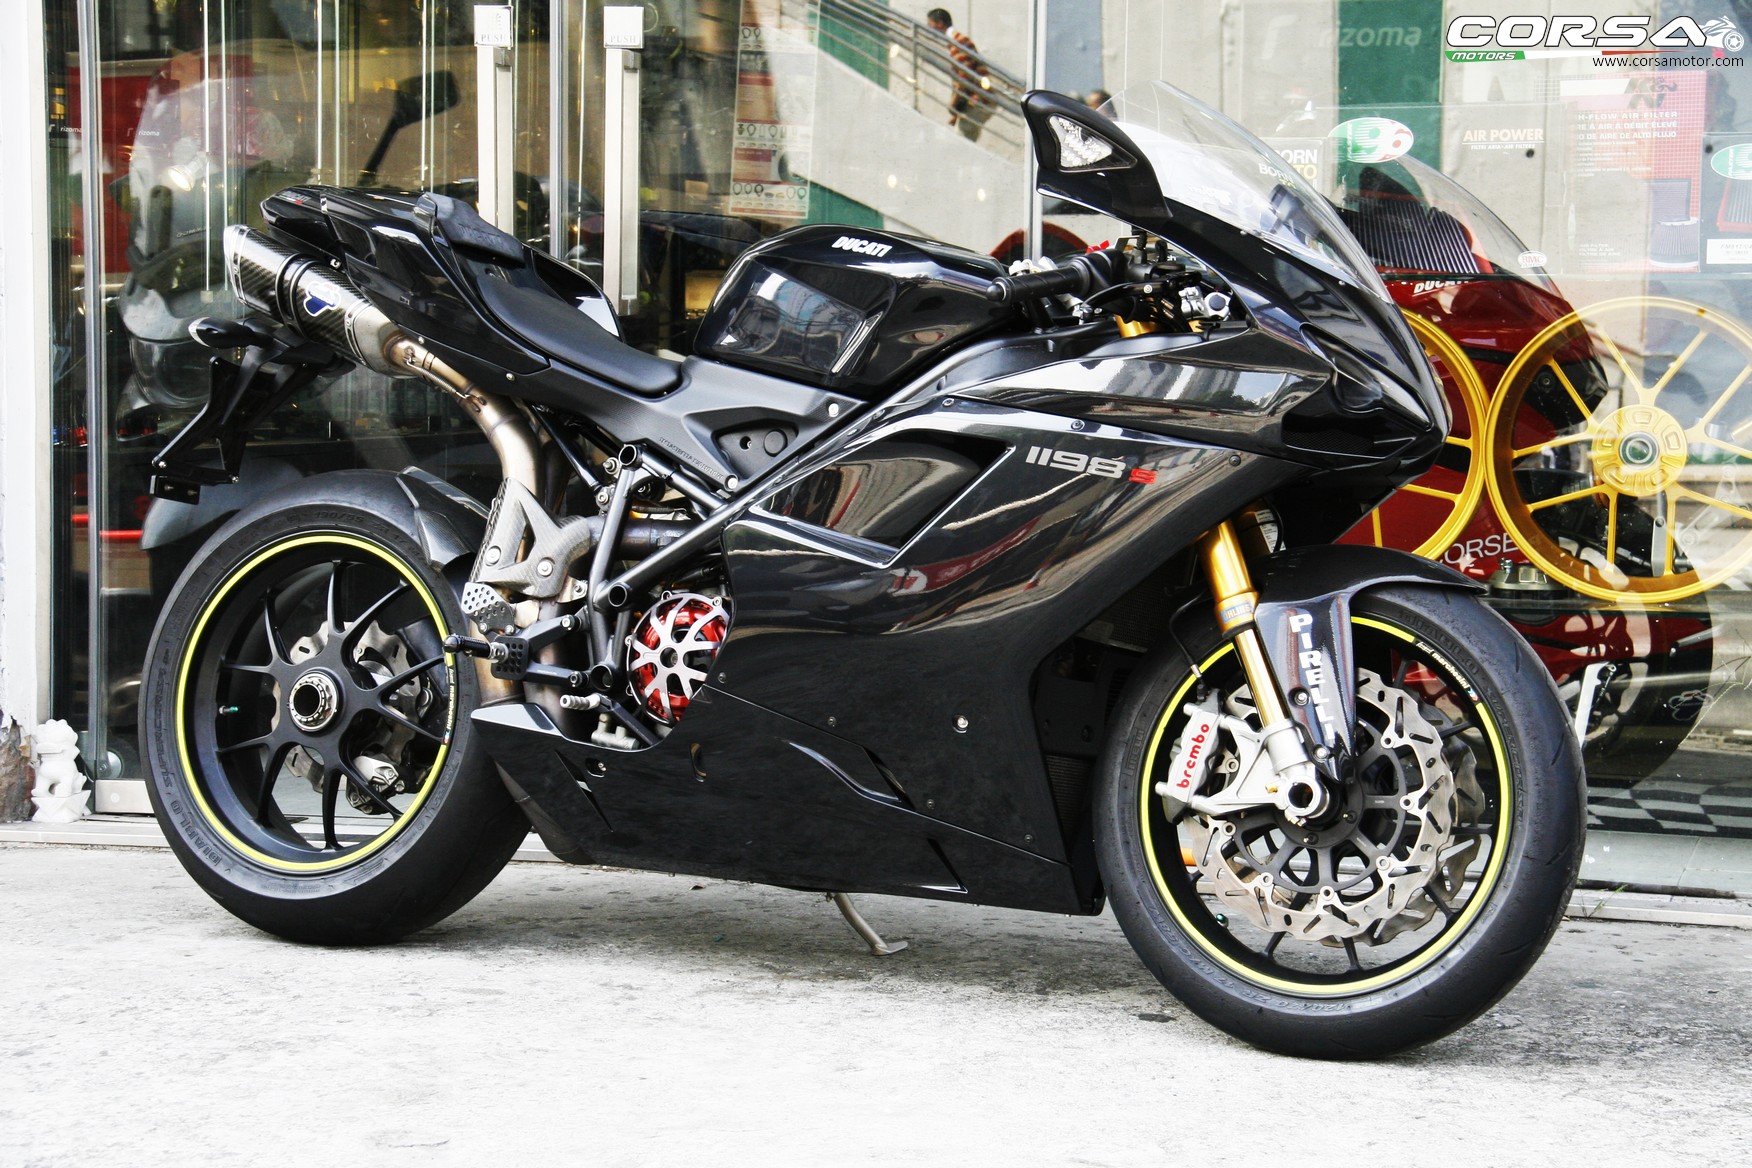 2009 Ducati - 1198s (CORSA)